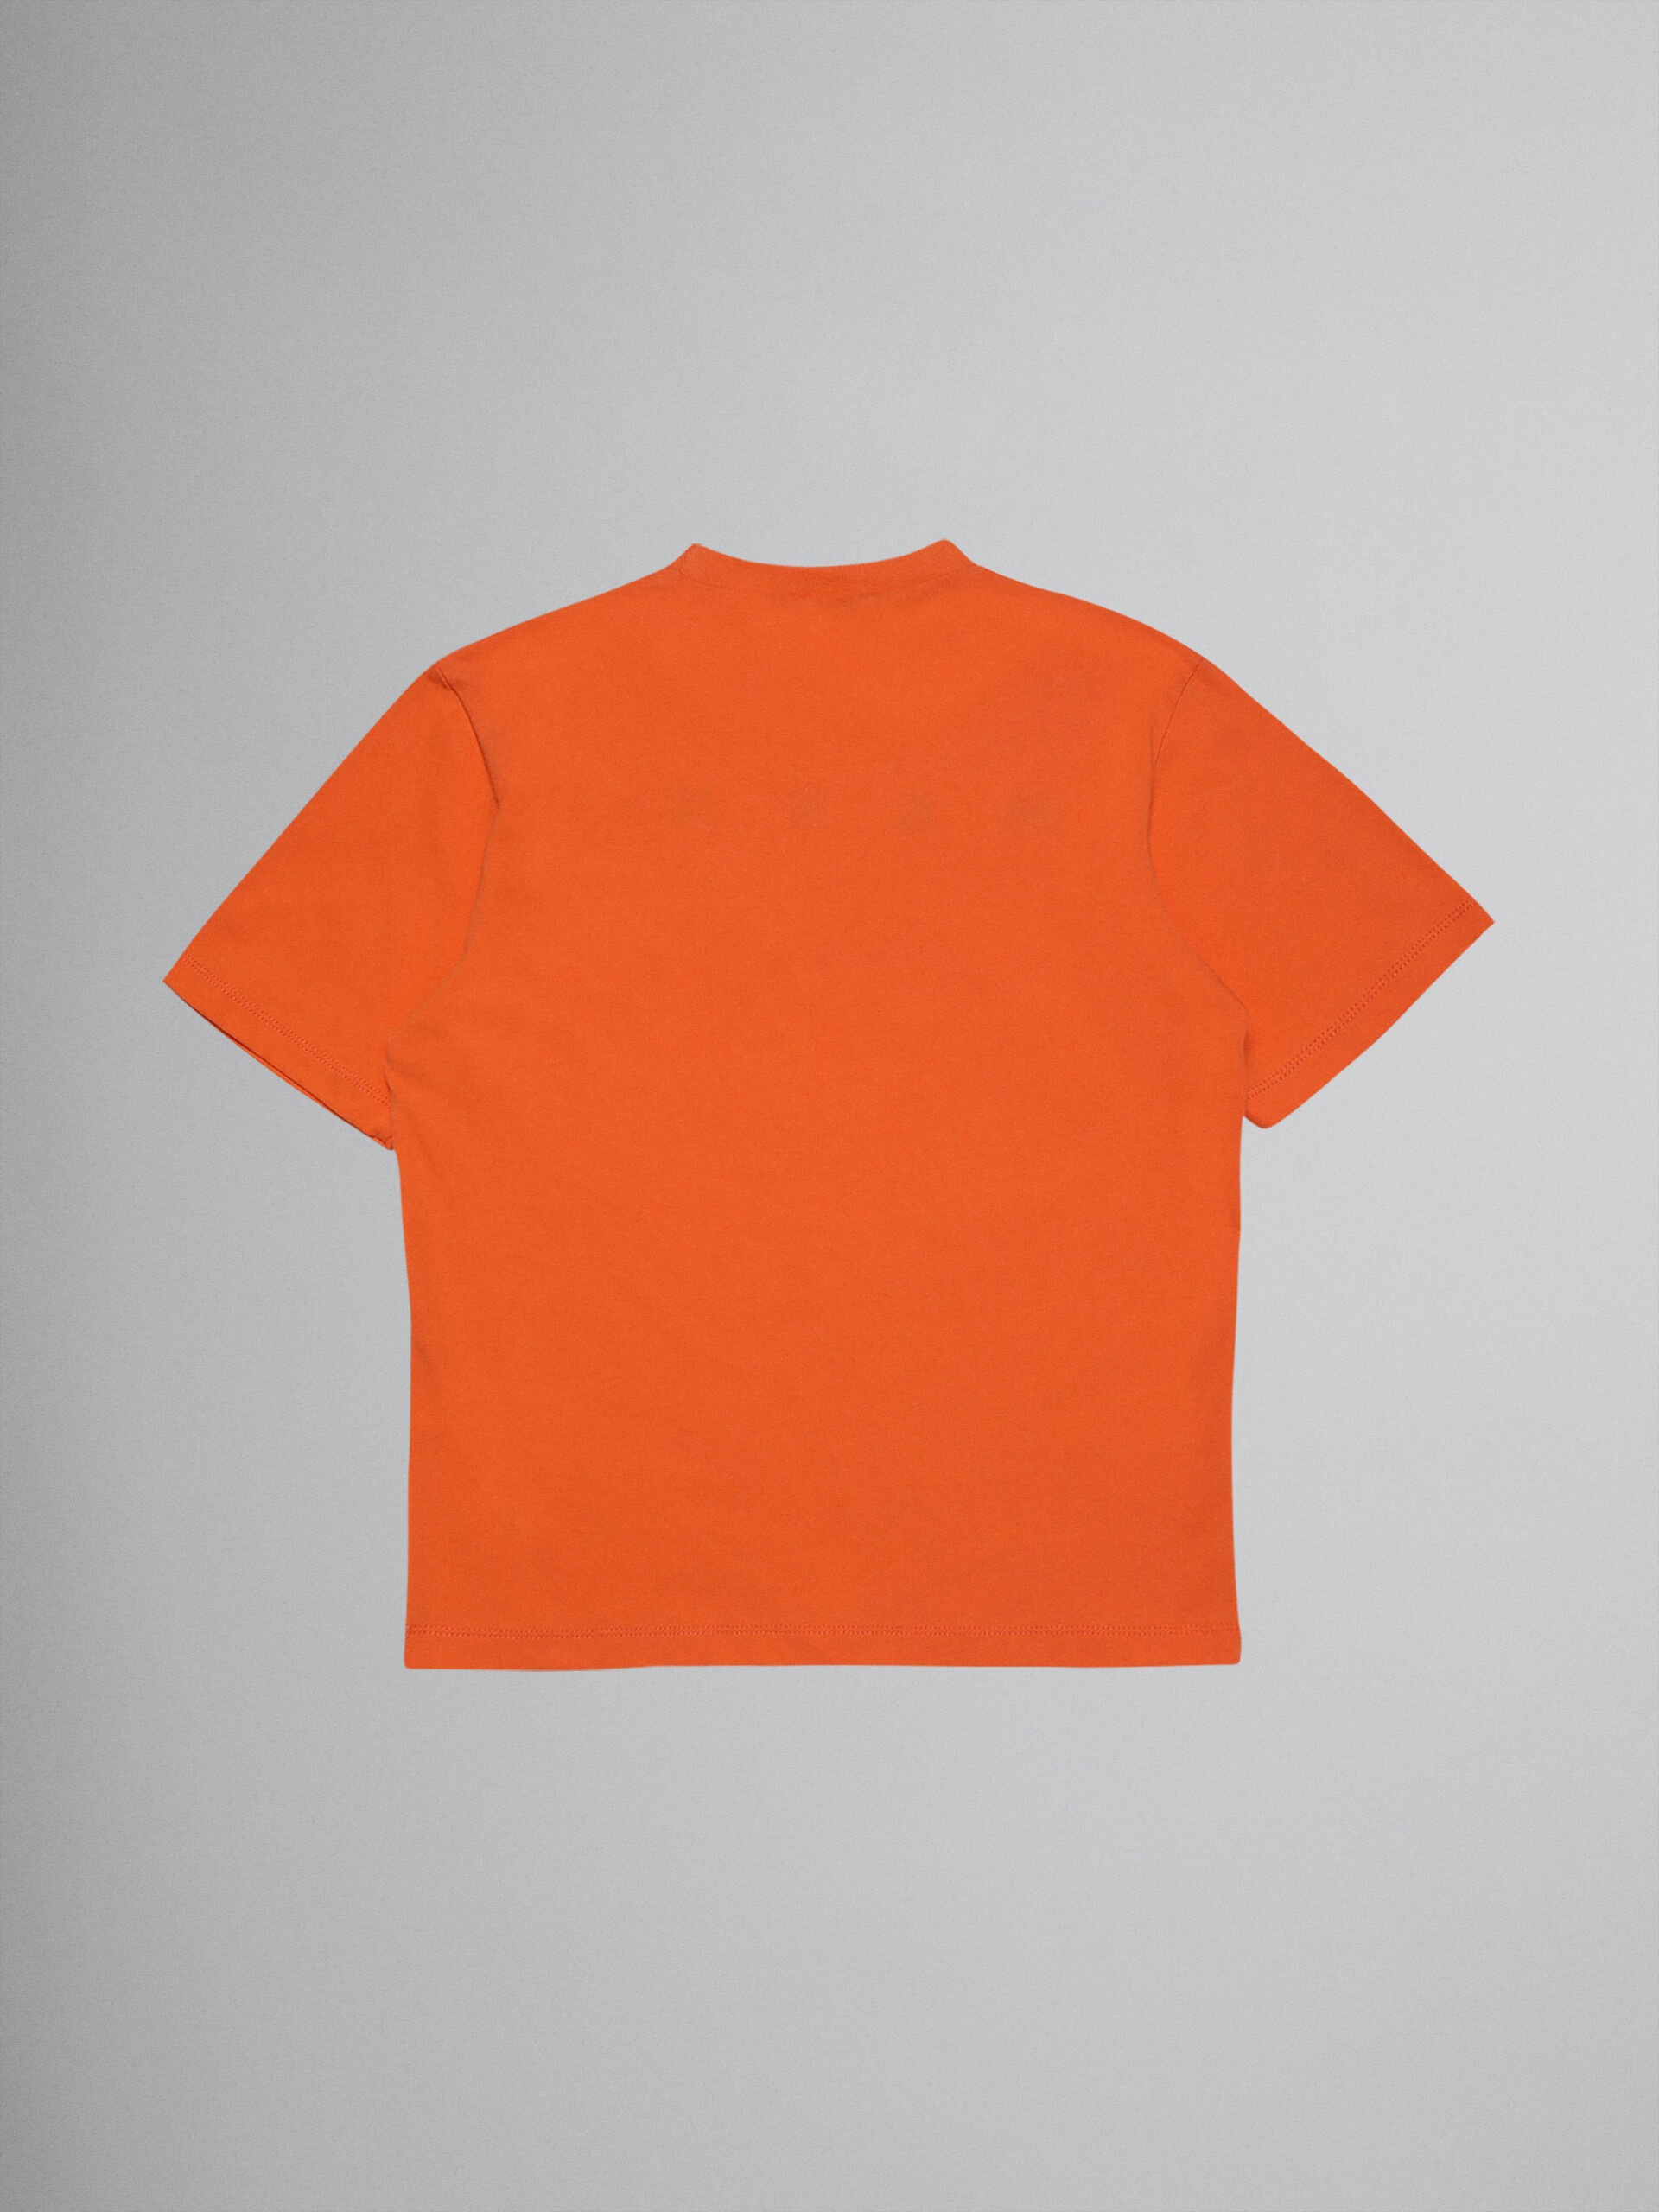 T-Shirt aus orangefarbenem Baumwolljersey mit Logo - T-shirts - Image 2